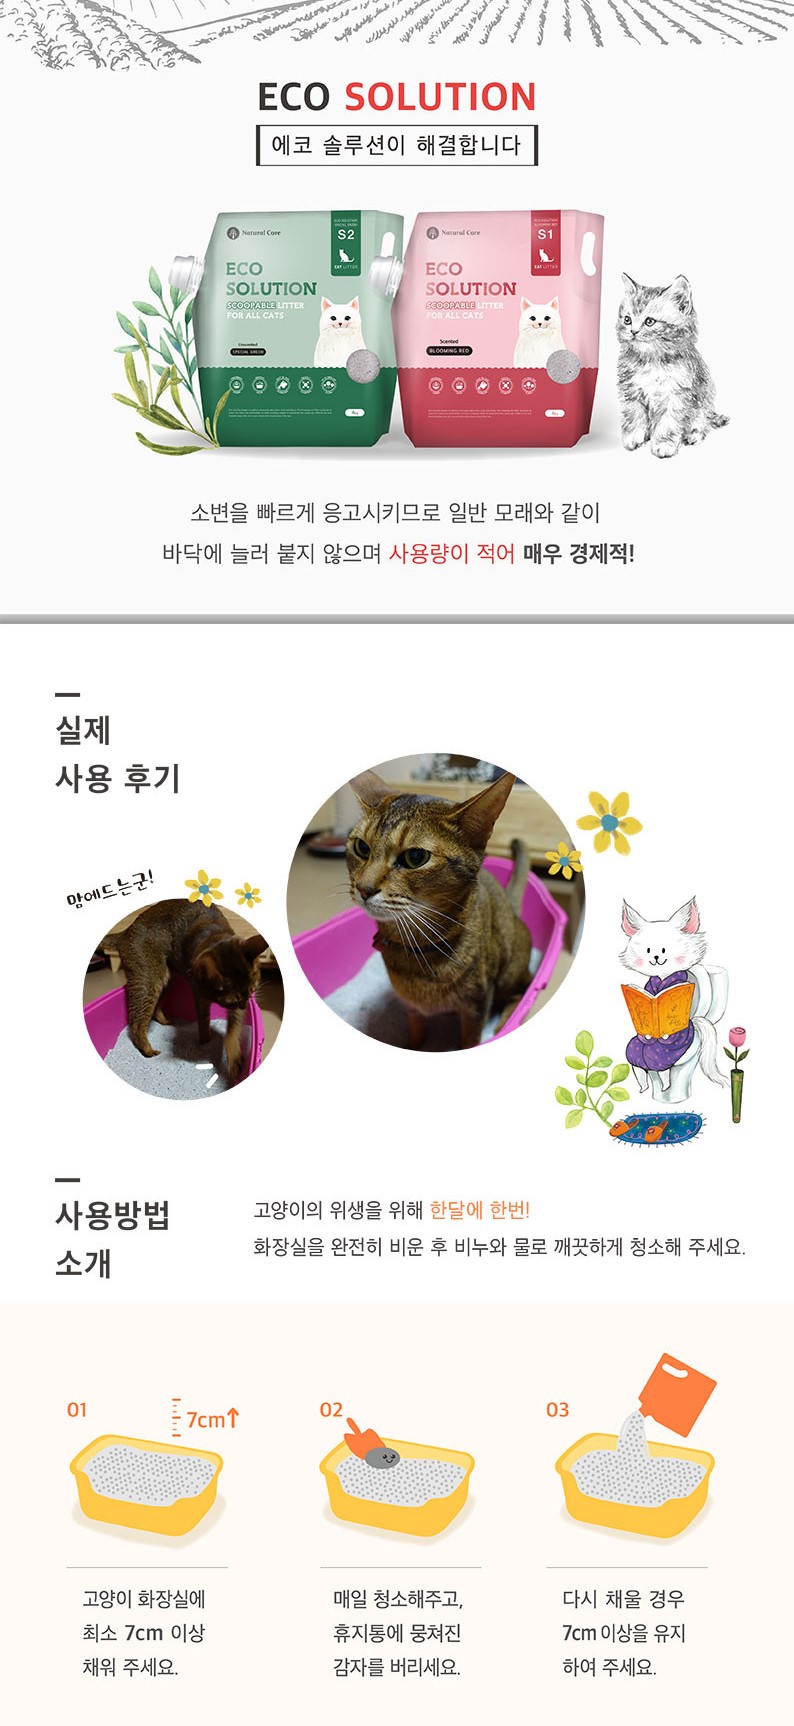 韓國食品-[Naturalcore] Eco Solution貓砂 (綠色) 4kg